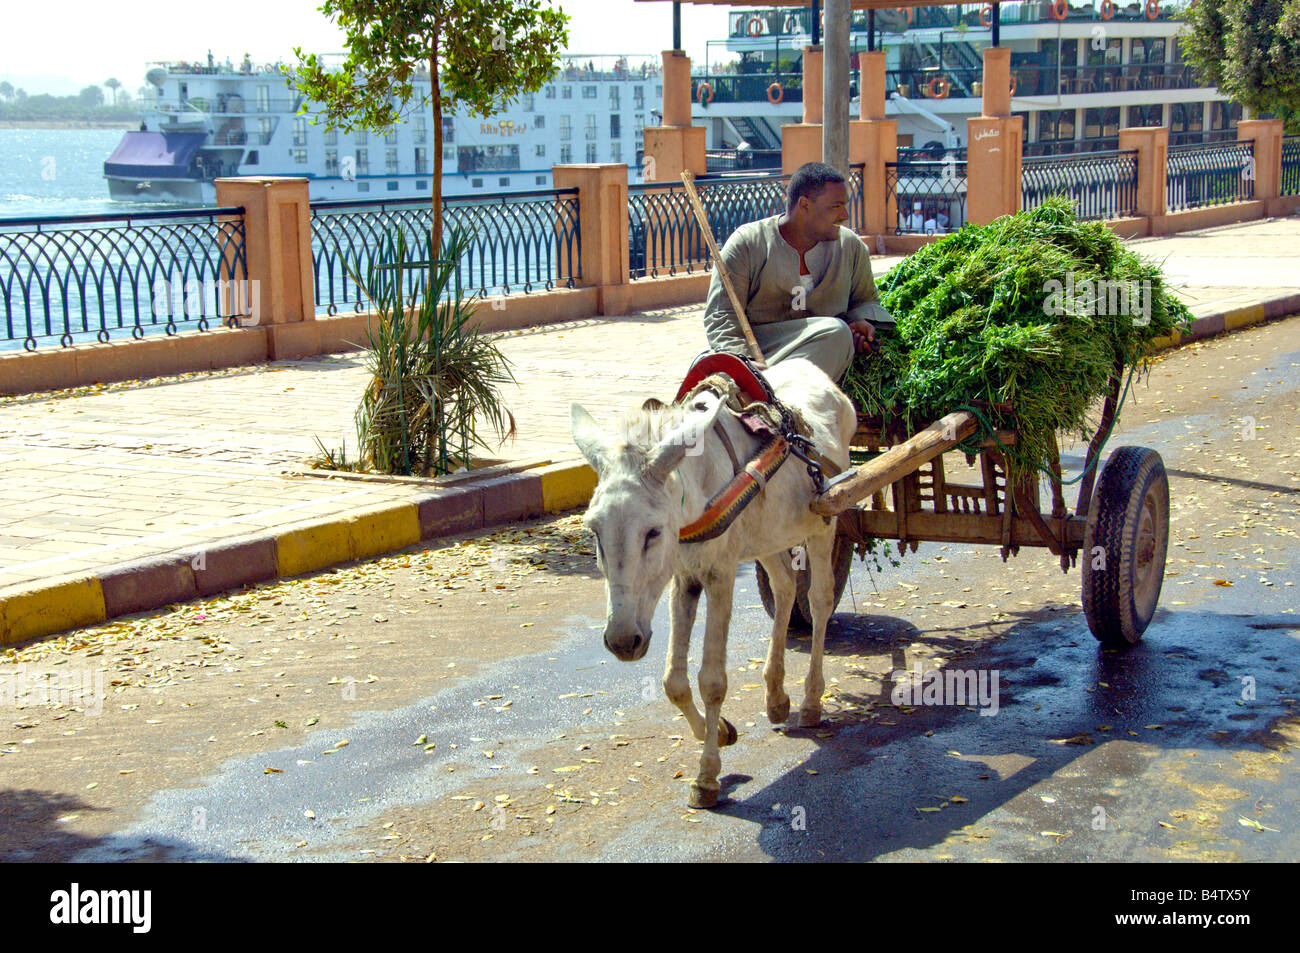 Des scènes de rue avec des charrettes et de la luzerne à Edfu Égypte Banque D'Images